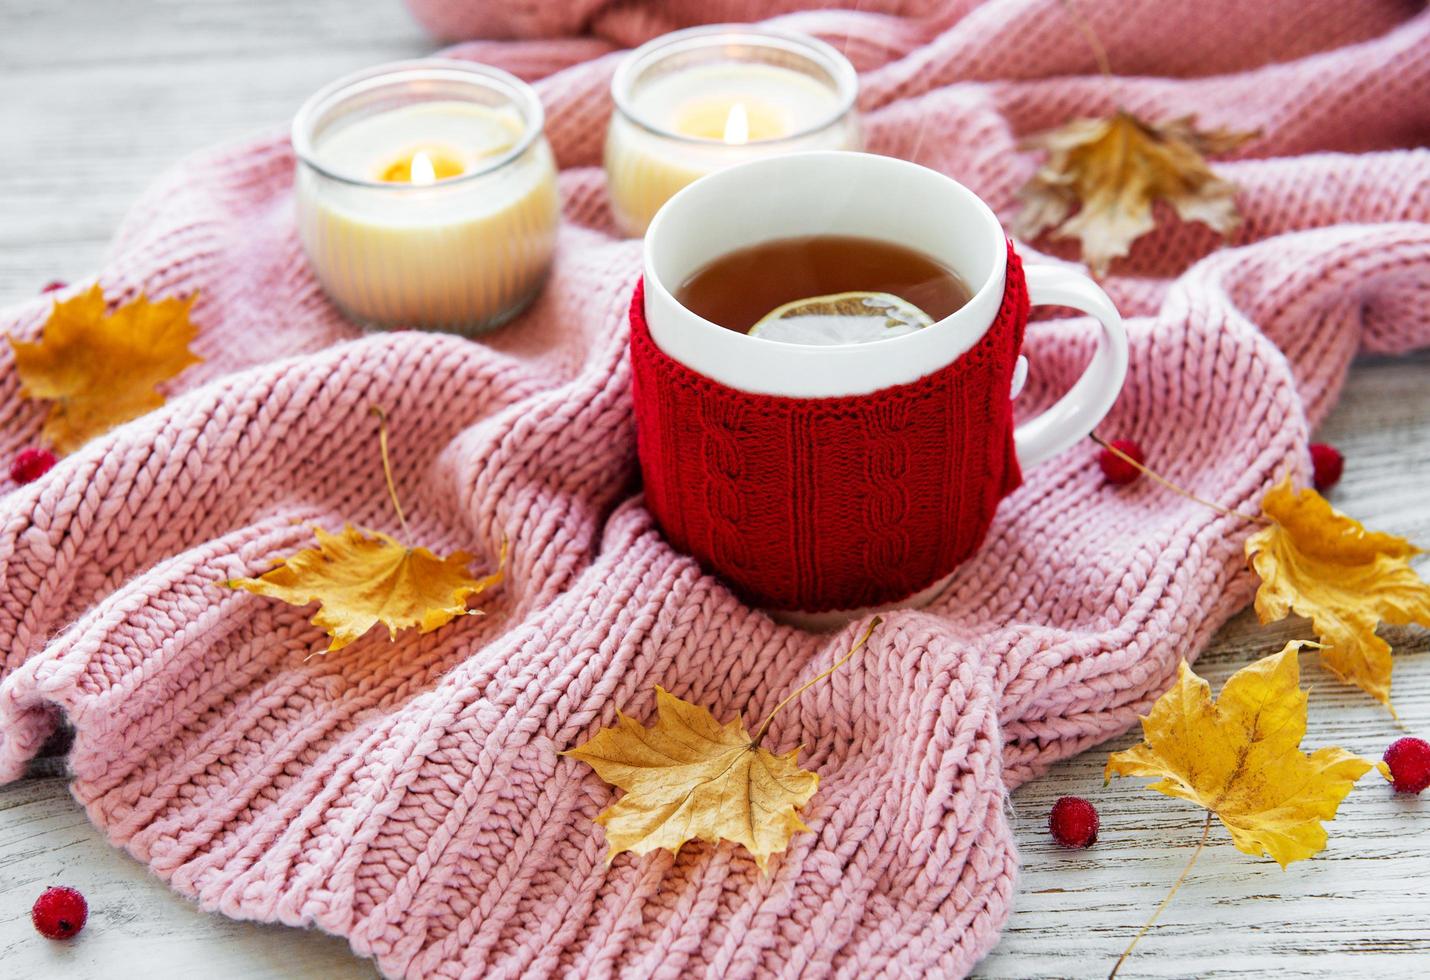 plat d'automne avec une tasse de thé et des feuilles photo